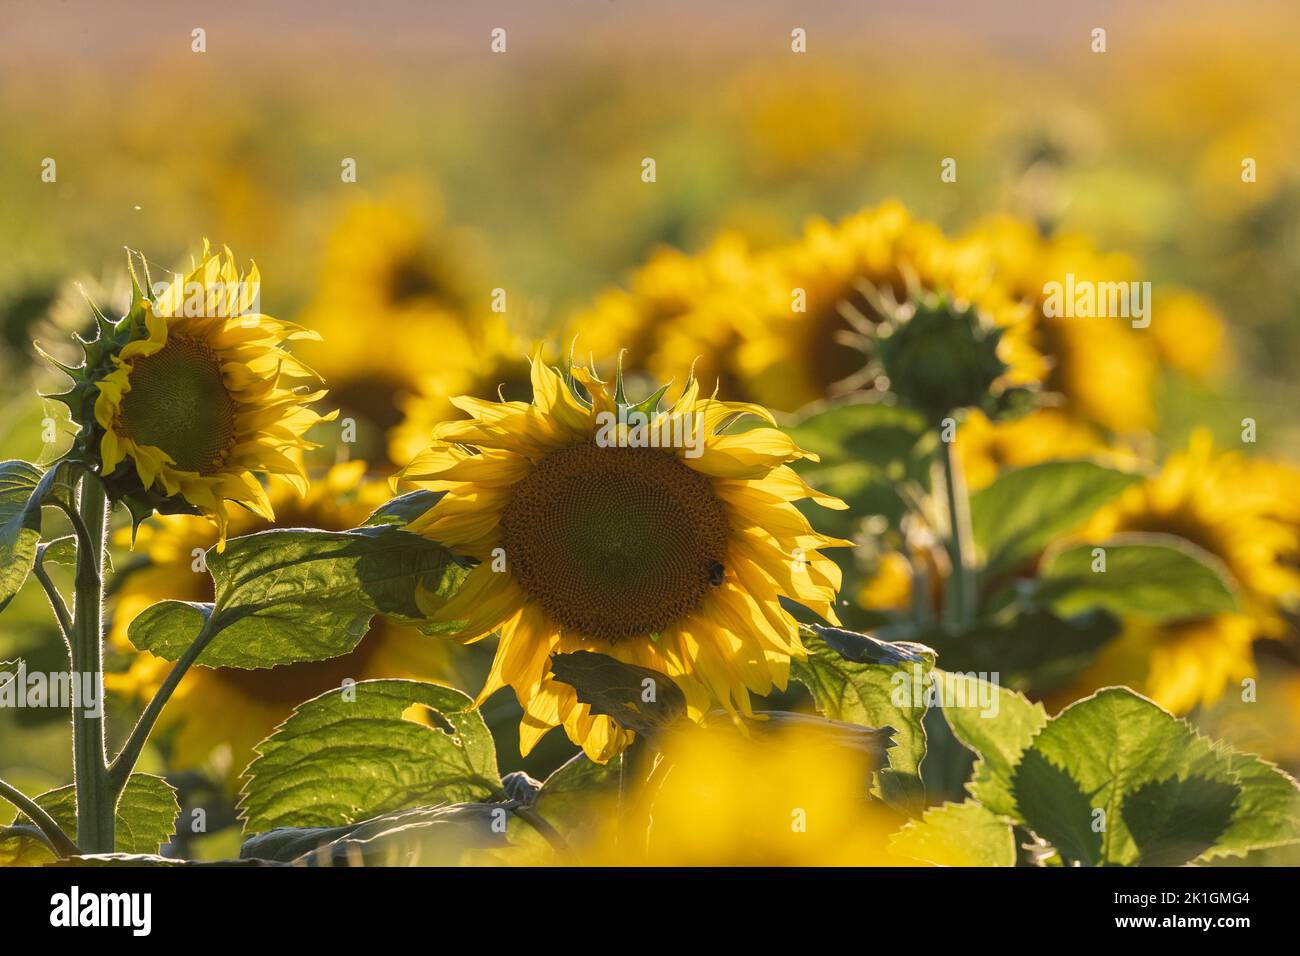 Ripe sunflower field in summertime morning, Podlaskie Voivodeship, Poland, Europe Stock Photo